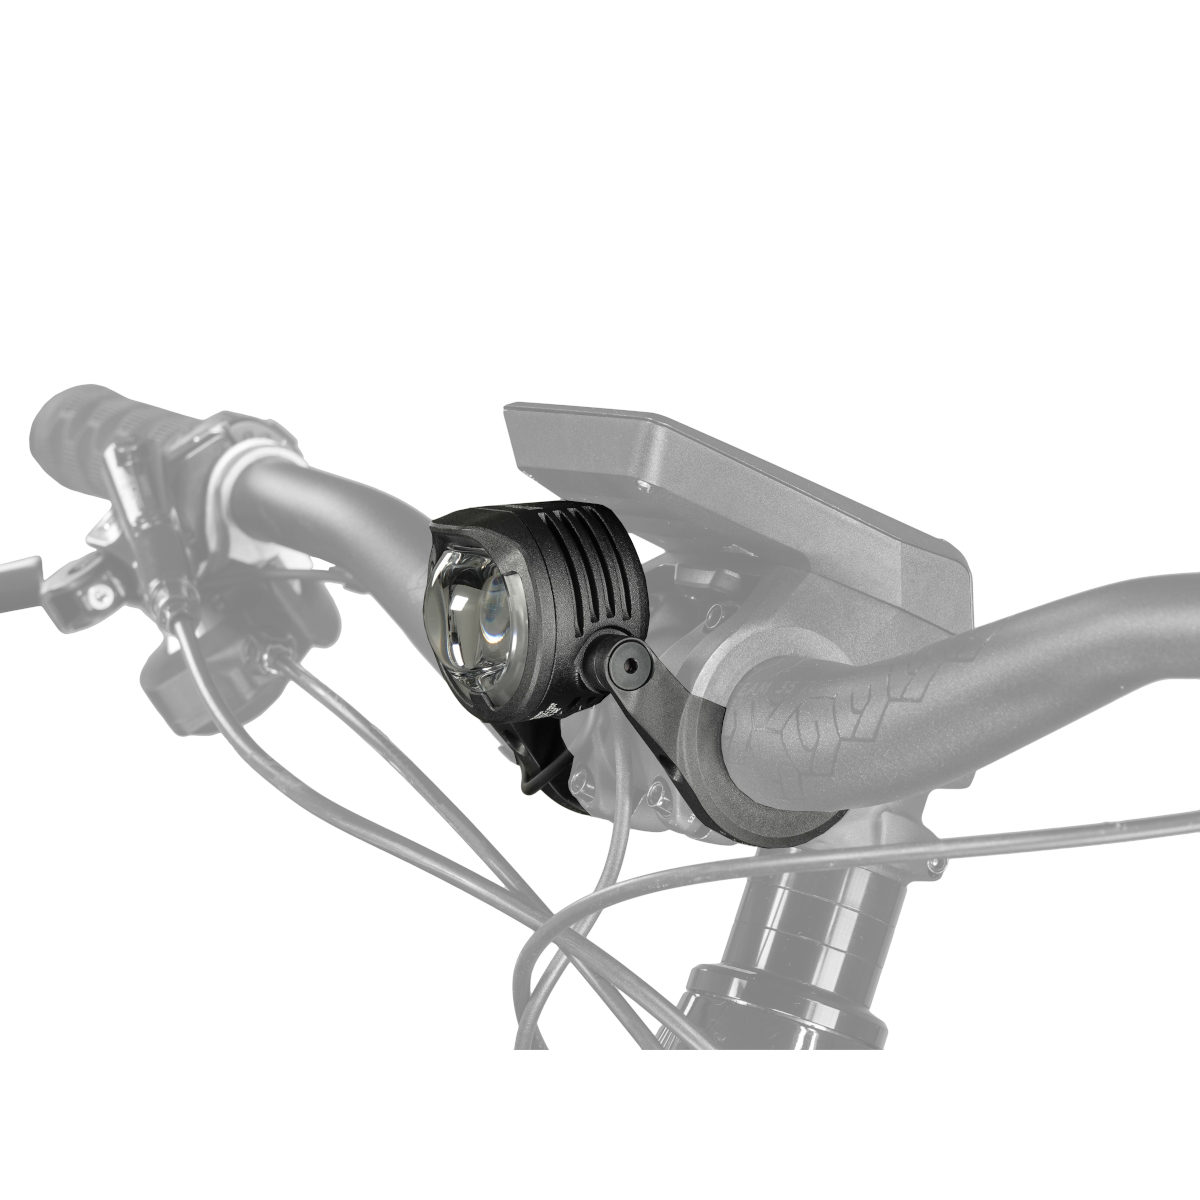 Produktbild von Lupine SL SF Bosch Nyon 2 E-Bike Frontleuchte